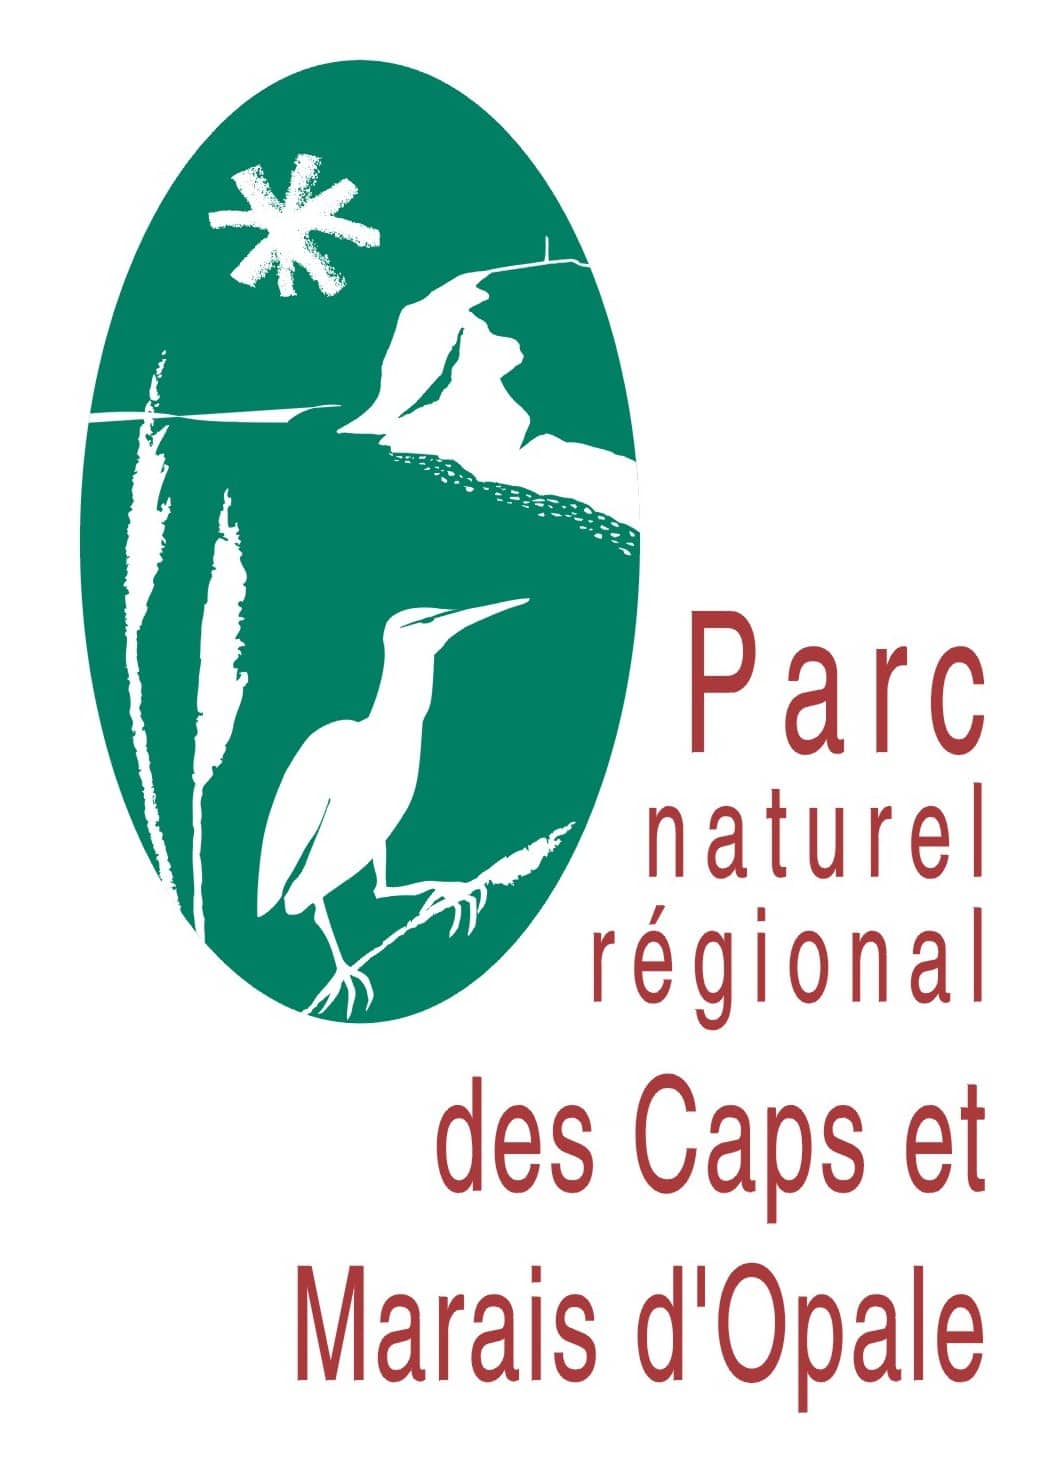 Parc naturel régional des Caps et Marais d'Opale